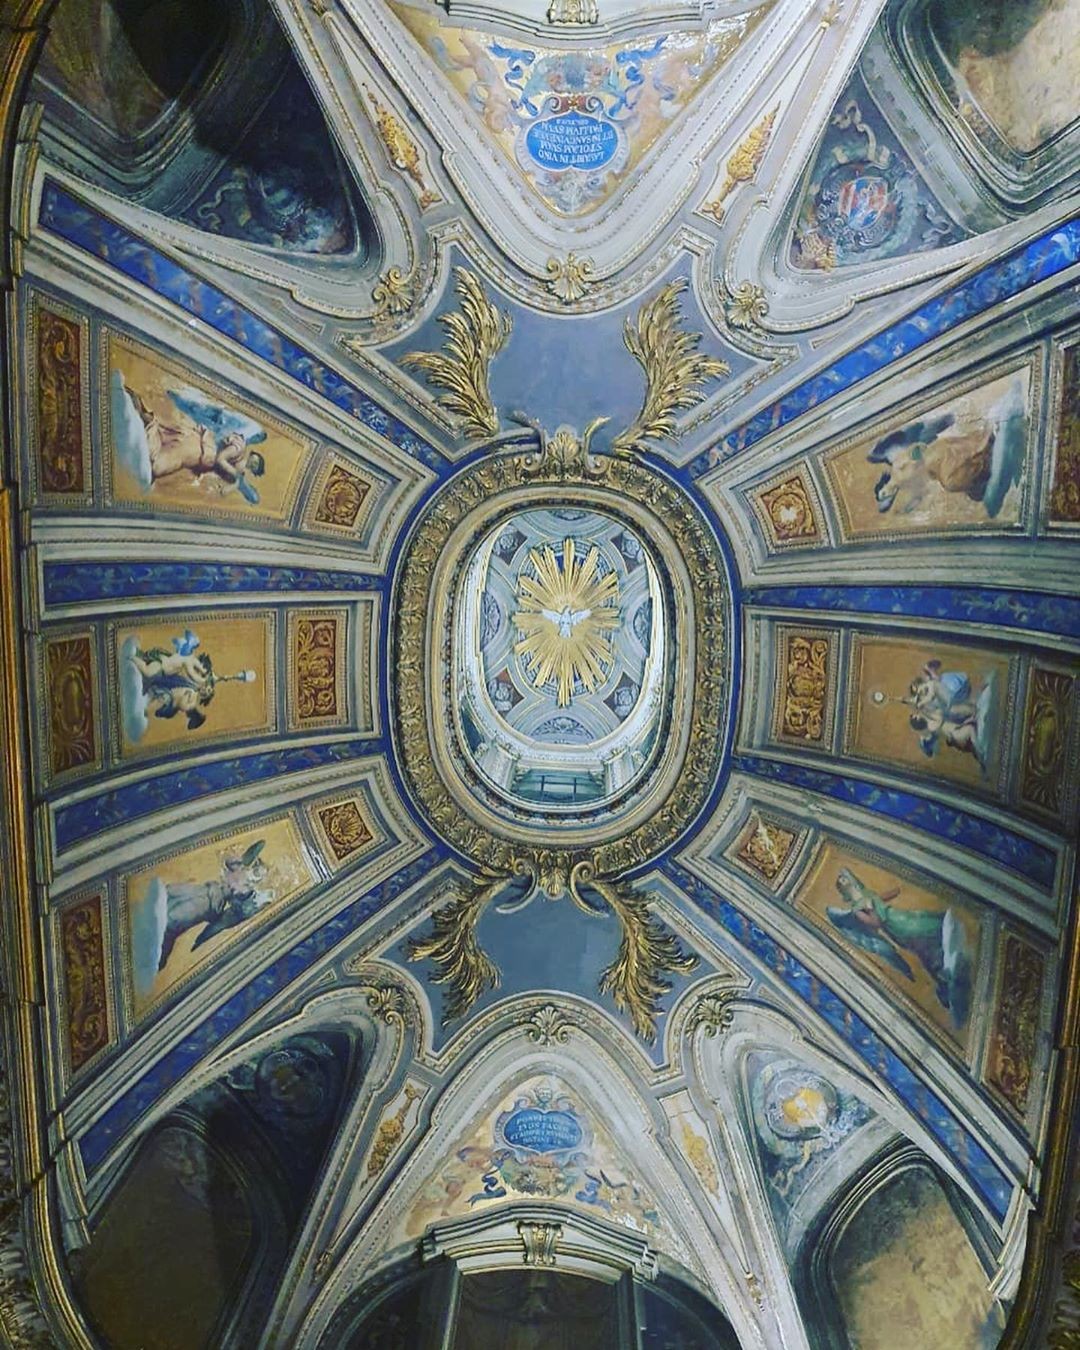 Anitta: visita ao Vaticano (Foto: Reprodução Instagram)